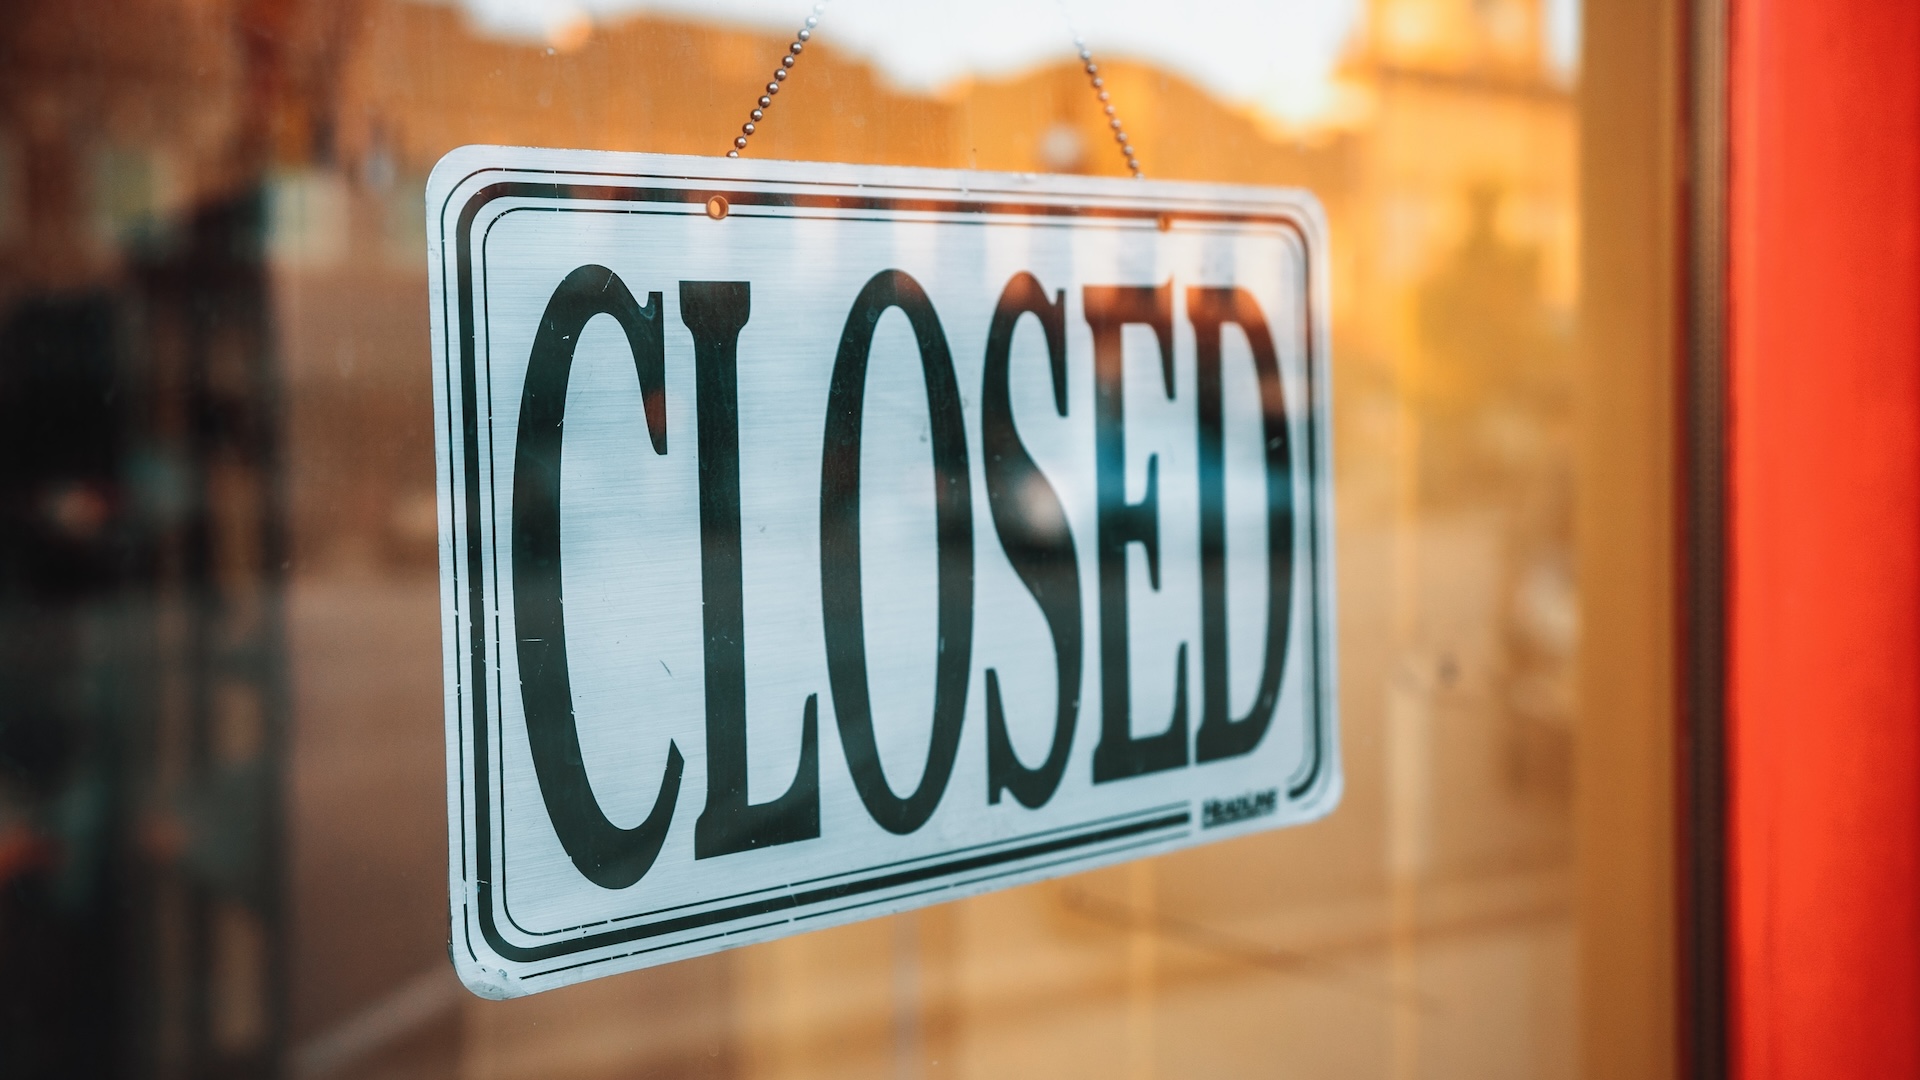 „Closed“-Schild eines geschlossenen Shops an einer Ladentüre